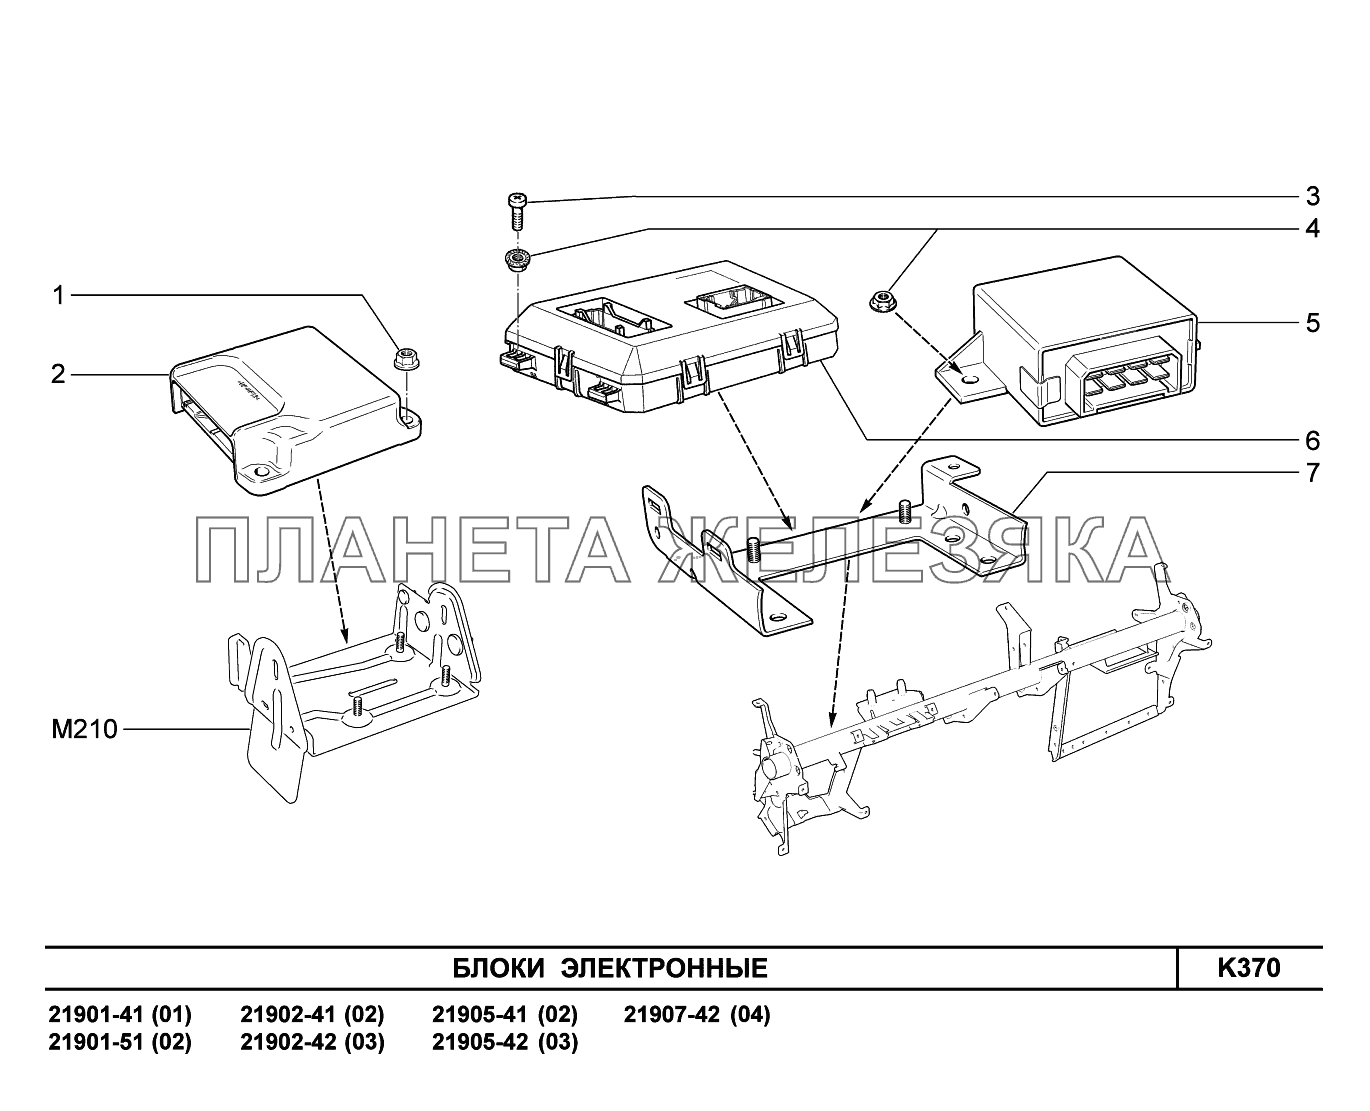 K370. Блоки электронные Lada Granta-2190